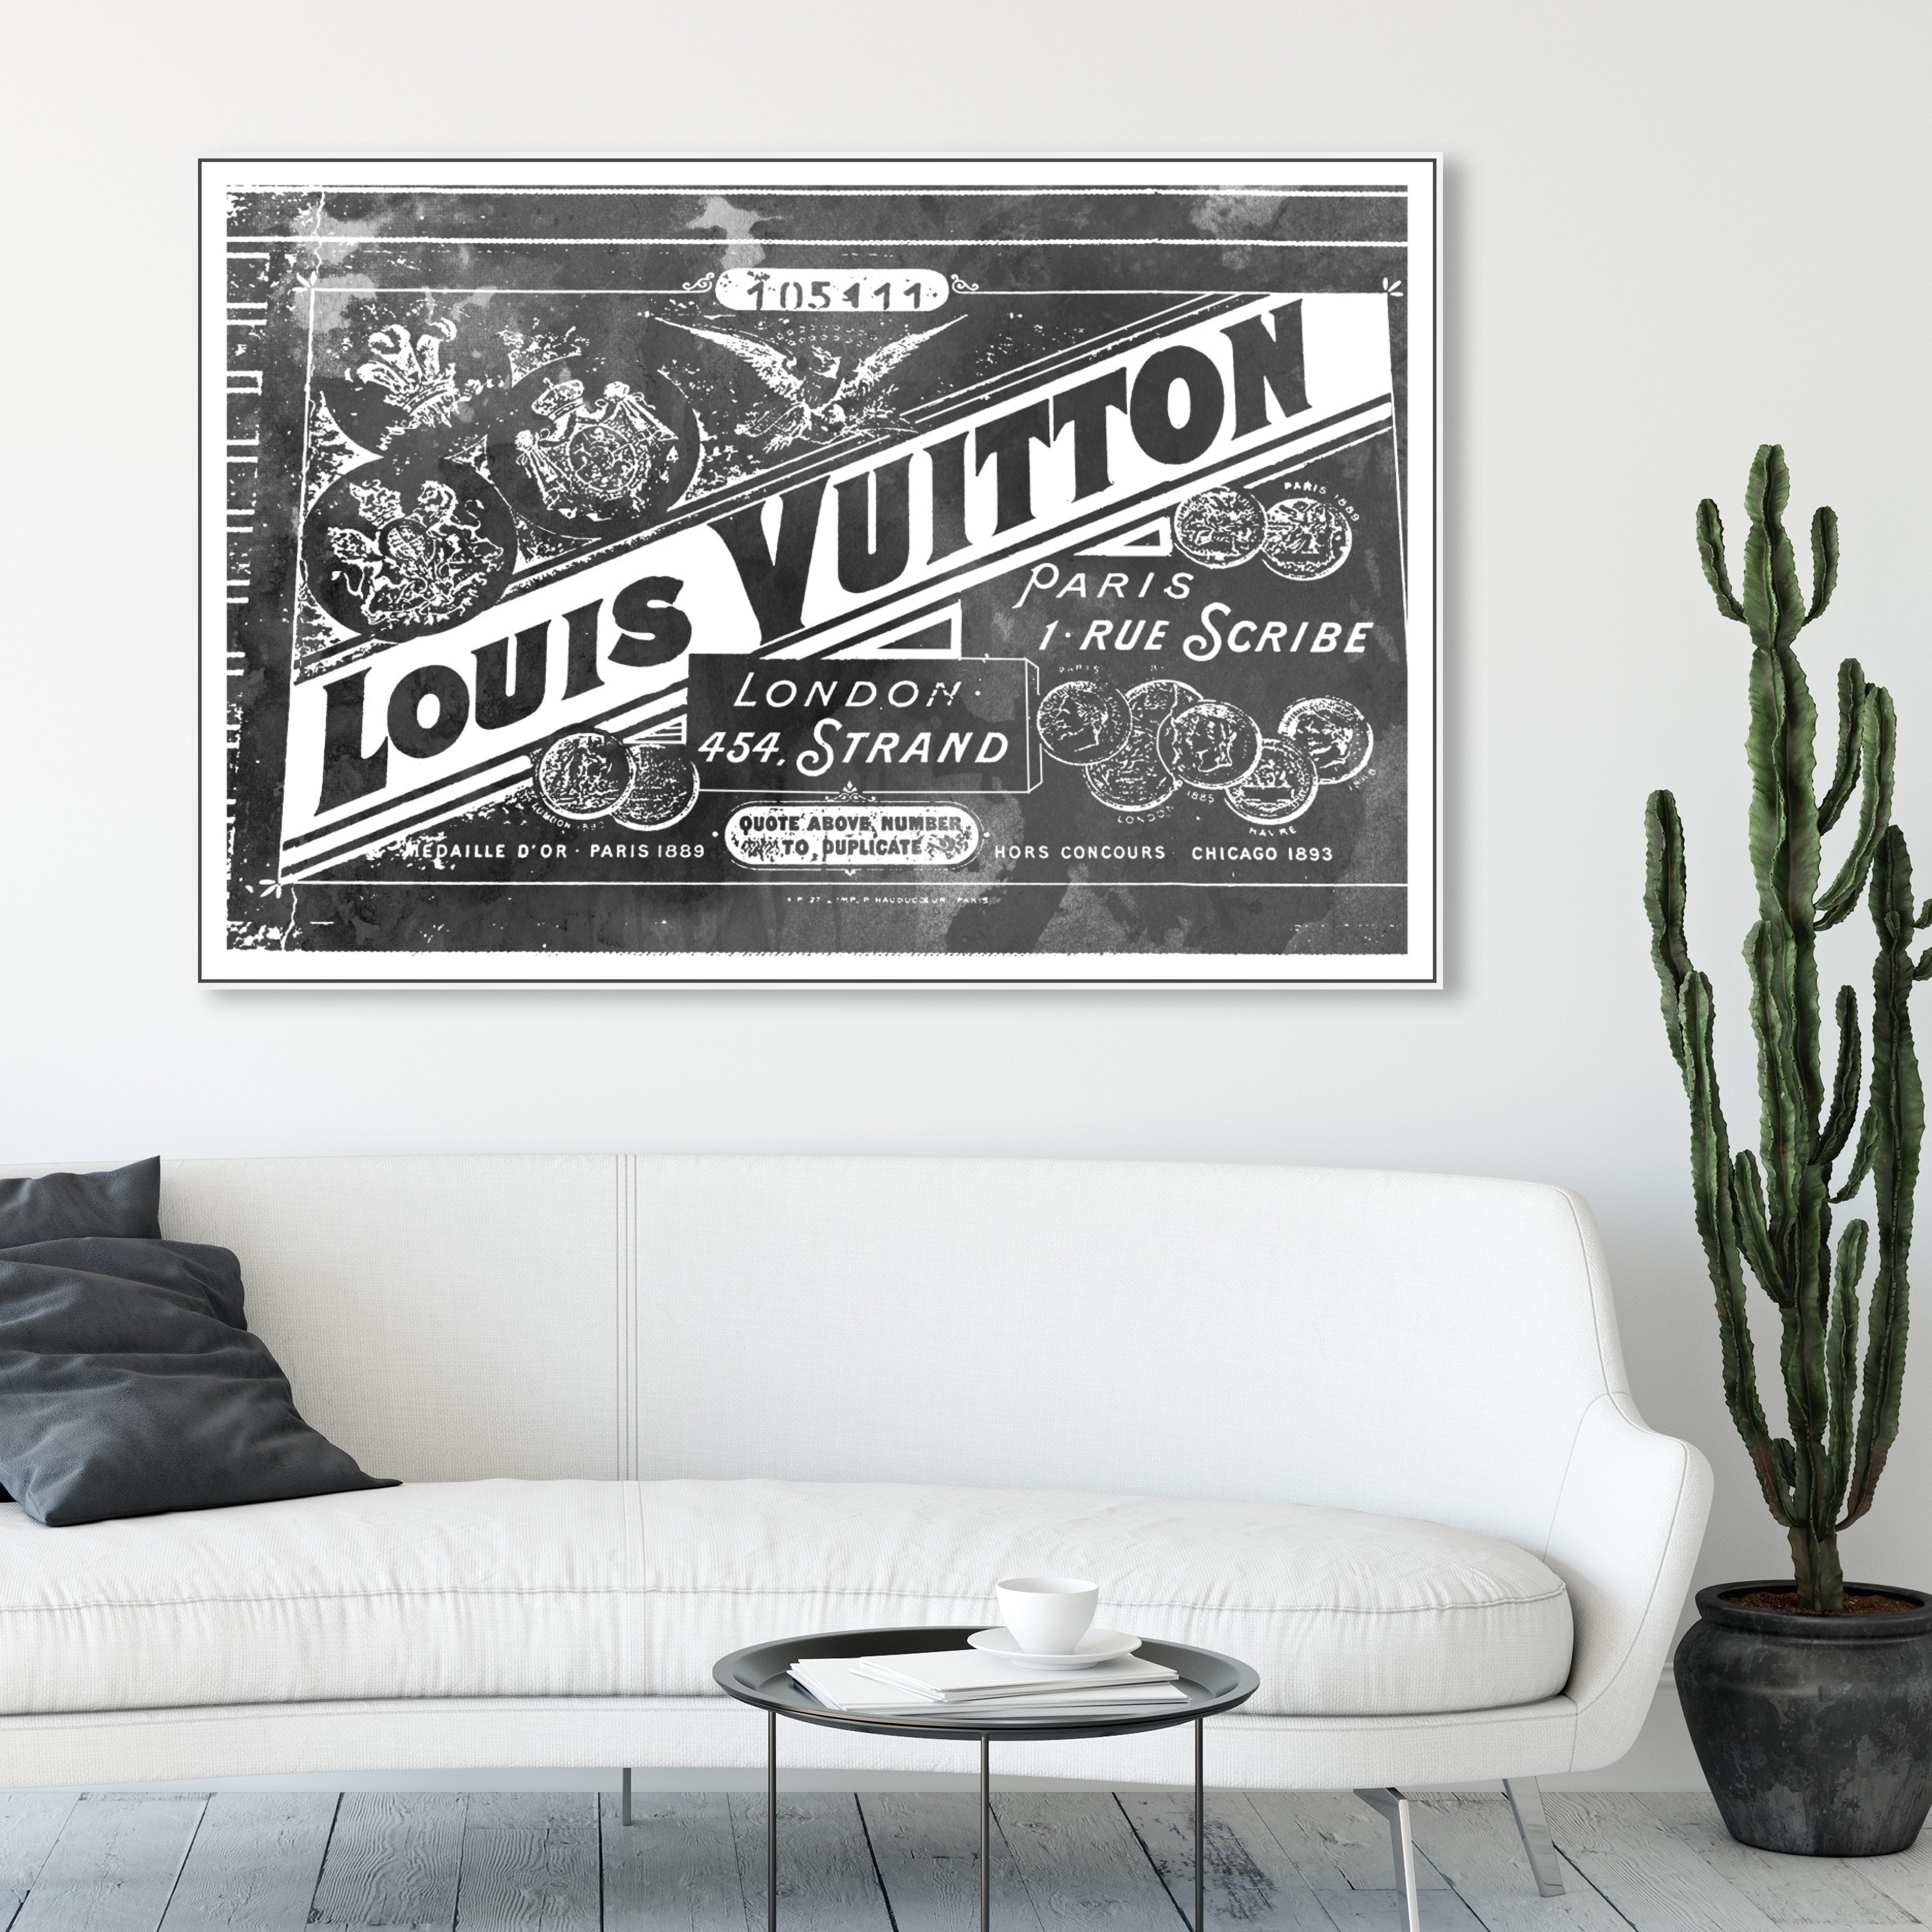 Louis Vuitton Canvas Art Posters